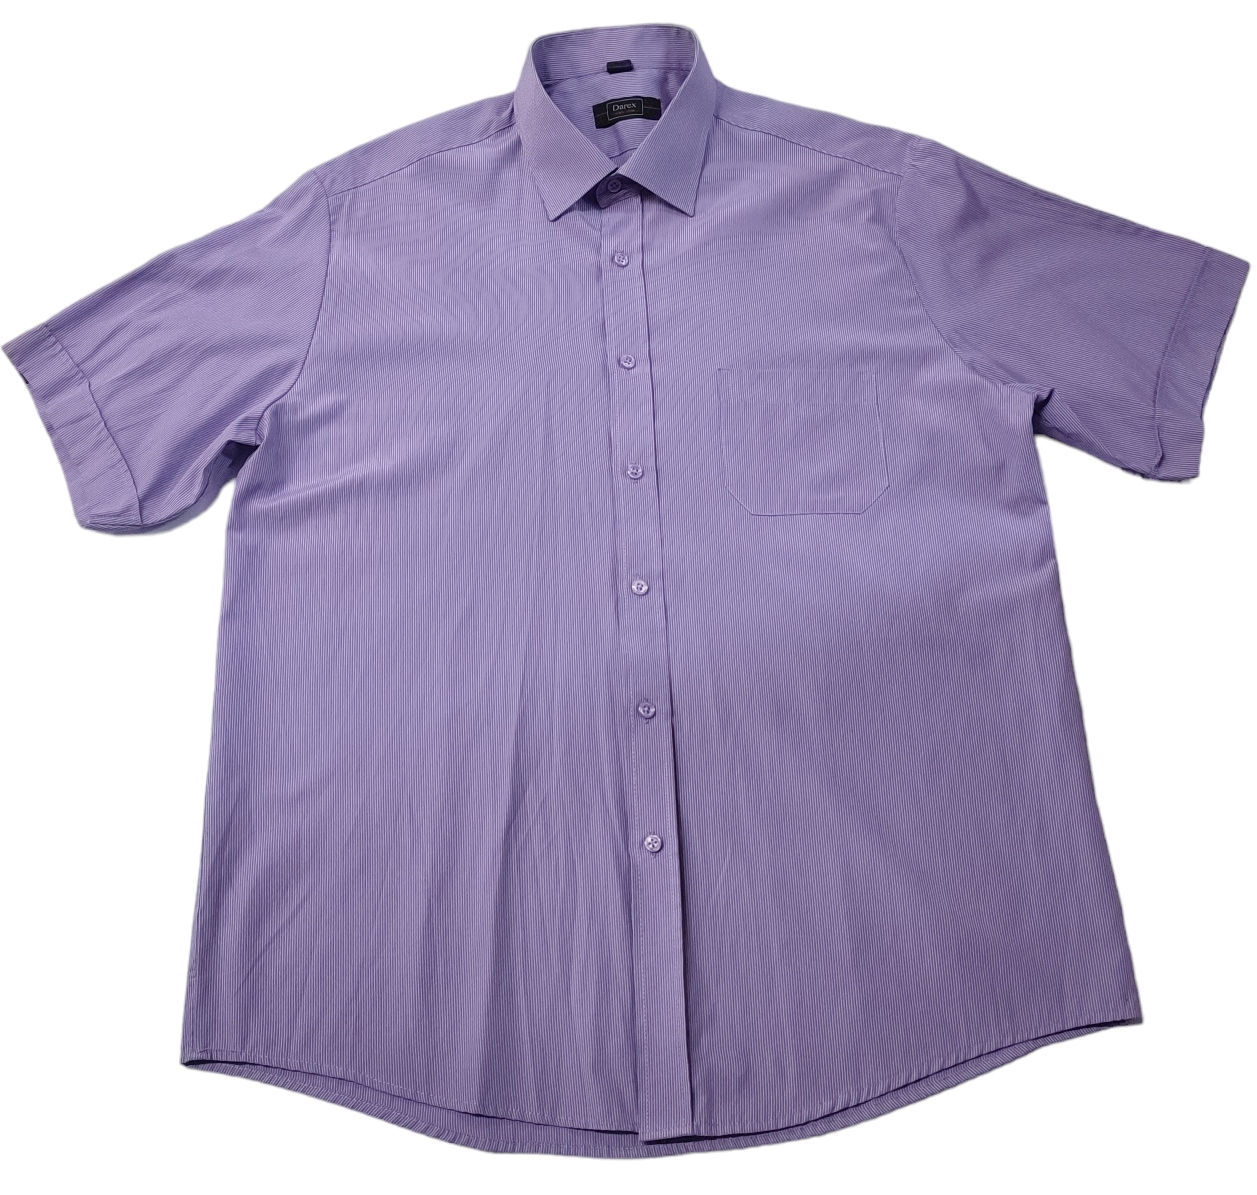 Pánska košeľa Darex fialová Krátky rukáv veľ.42